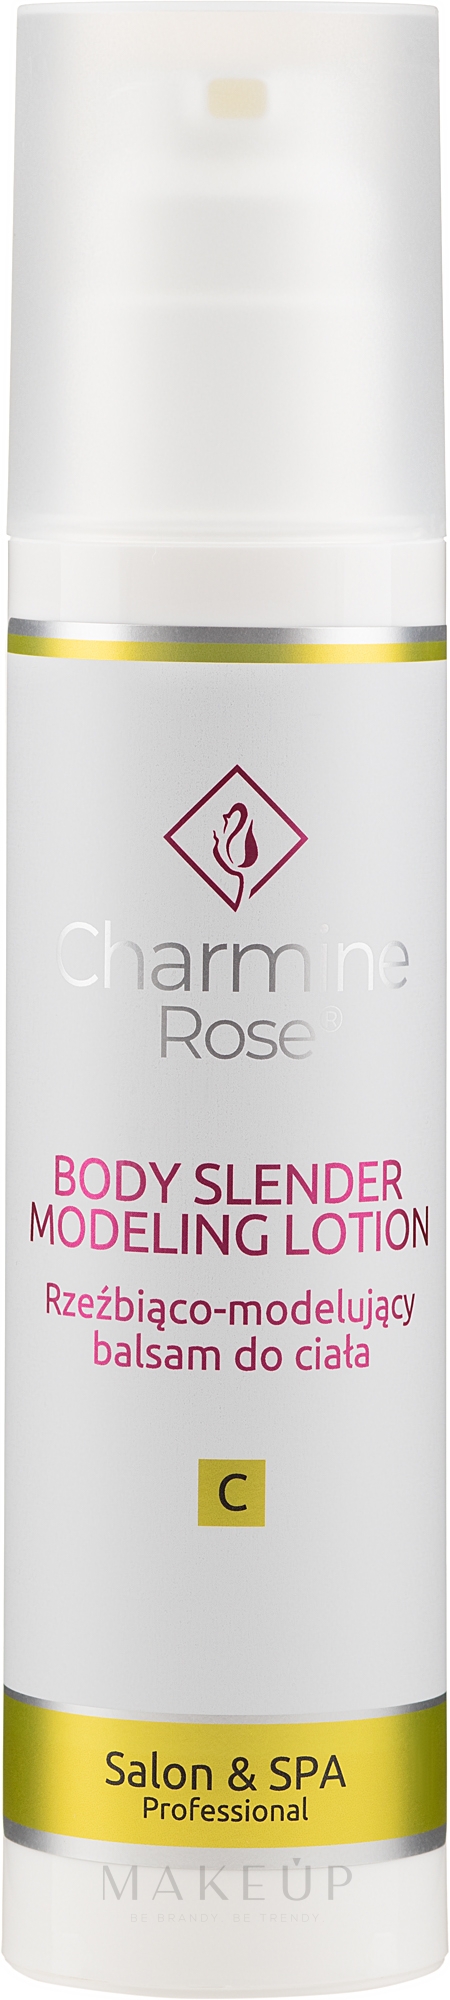 Formende Körperlotion - Charmine Rose Body Slender Modeling Lotion — Bild 200 ml